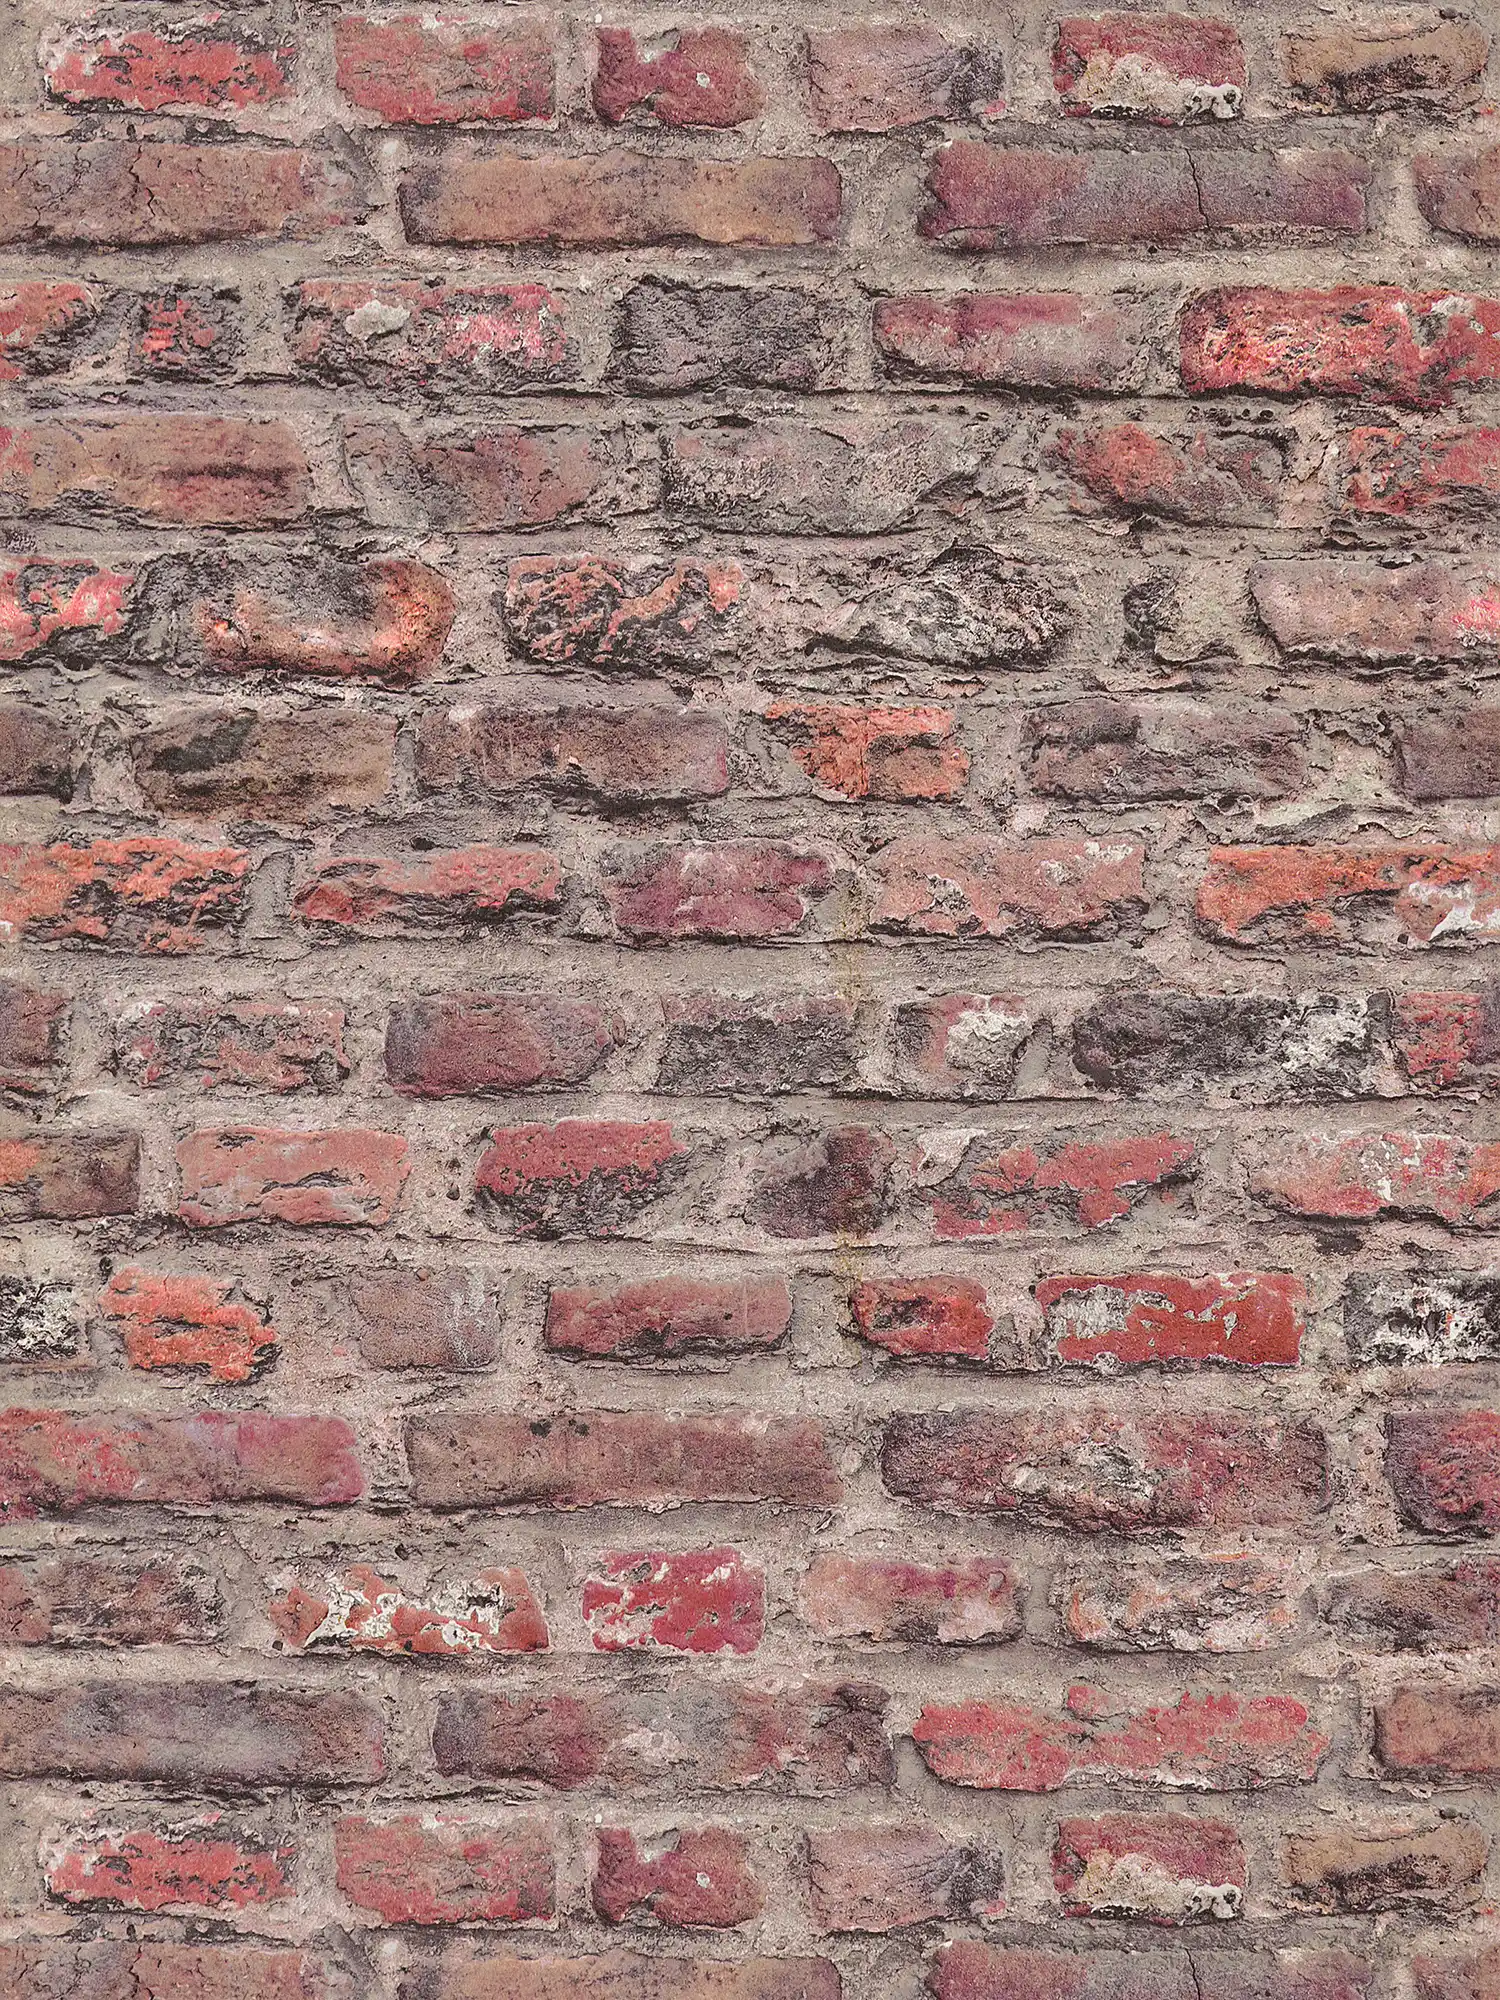 Vliestapete mit Ziegelmauer Design – Rot, Braun
